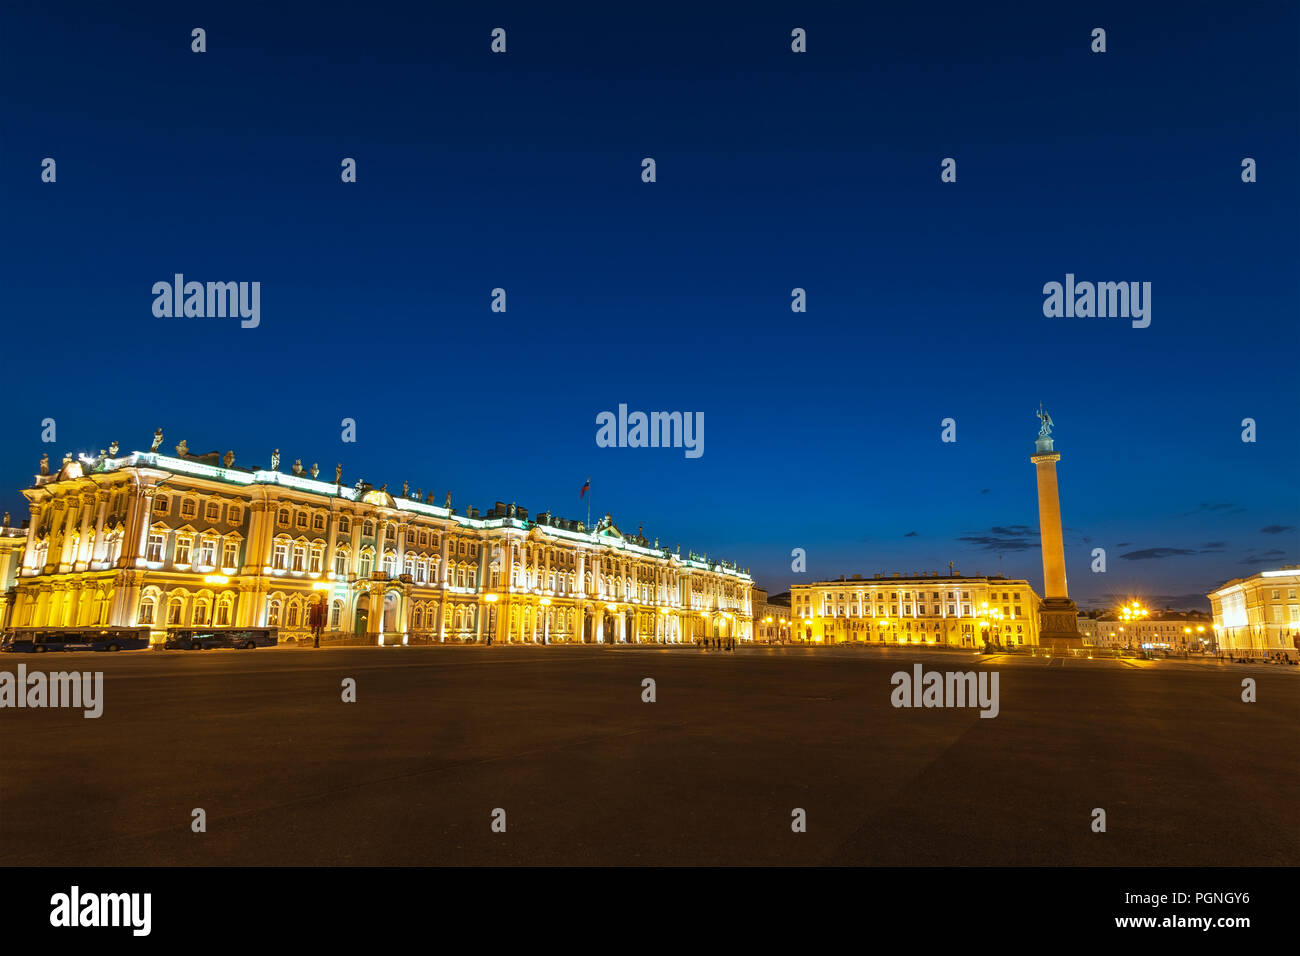 Saint Petersburg night city skyline at Place du Palais, Saint Petersbourg Russie Banque D'Images